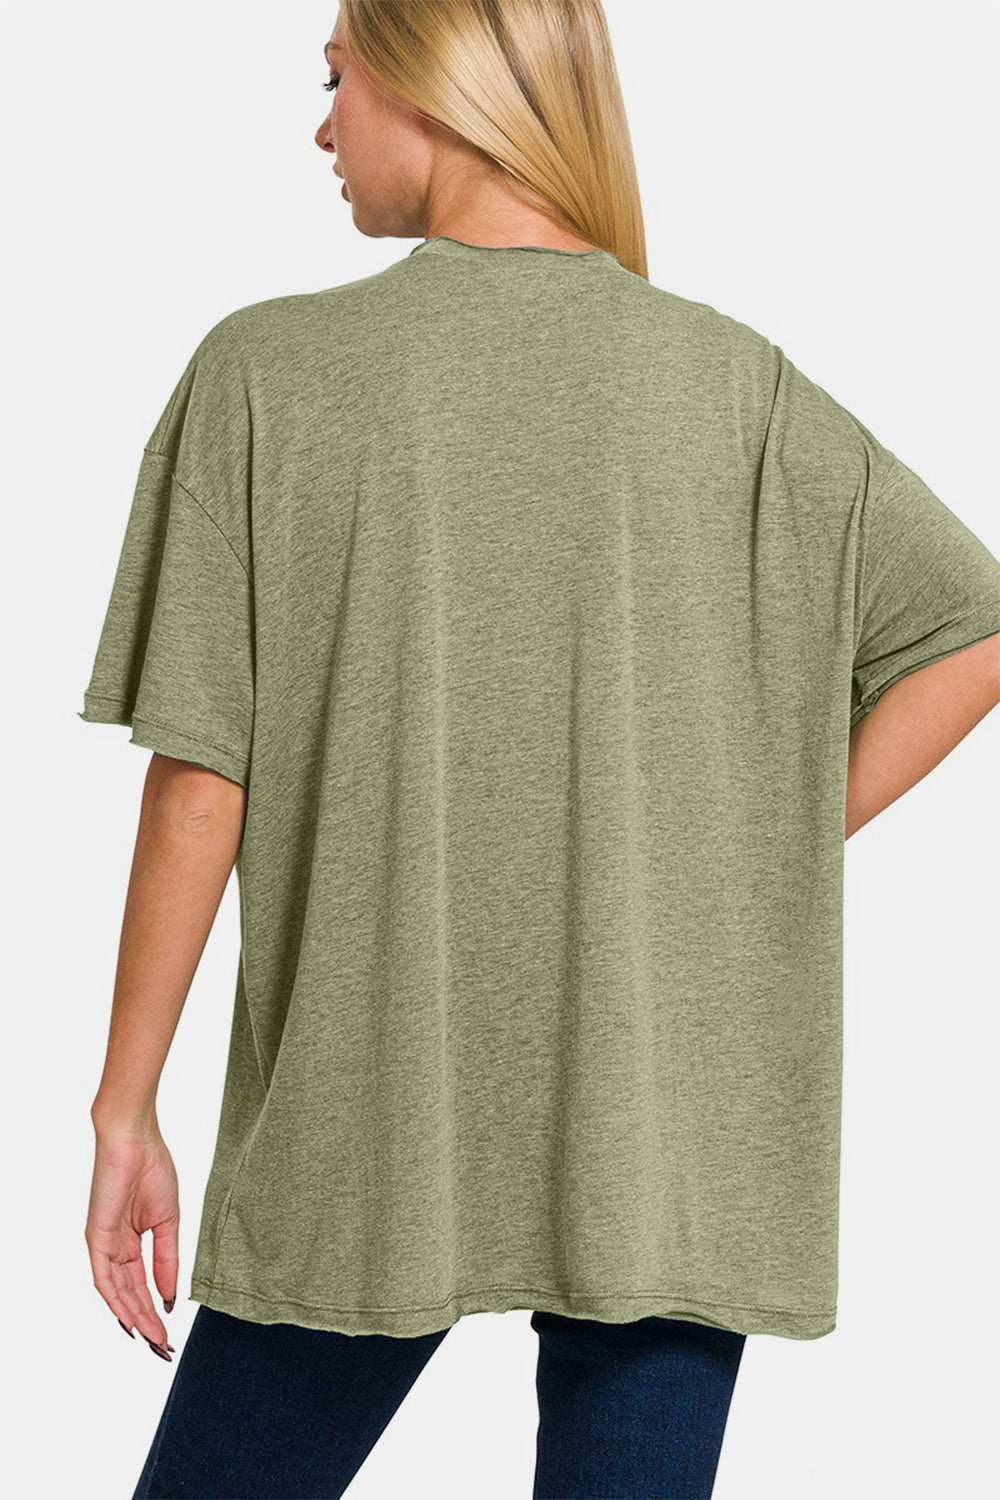 Drop Shoulder Oversized Front Pocket T-Shirt in Olive